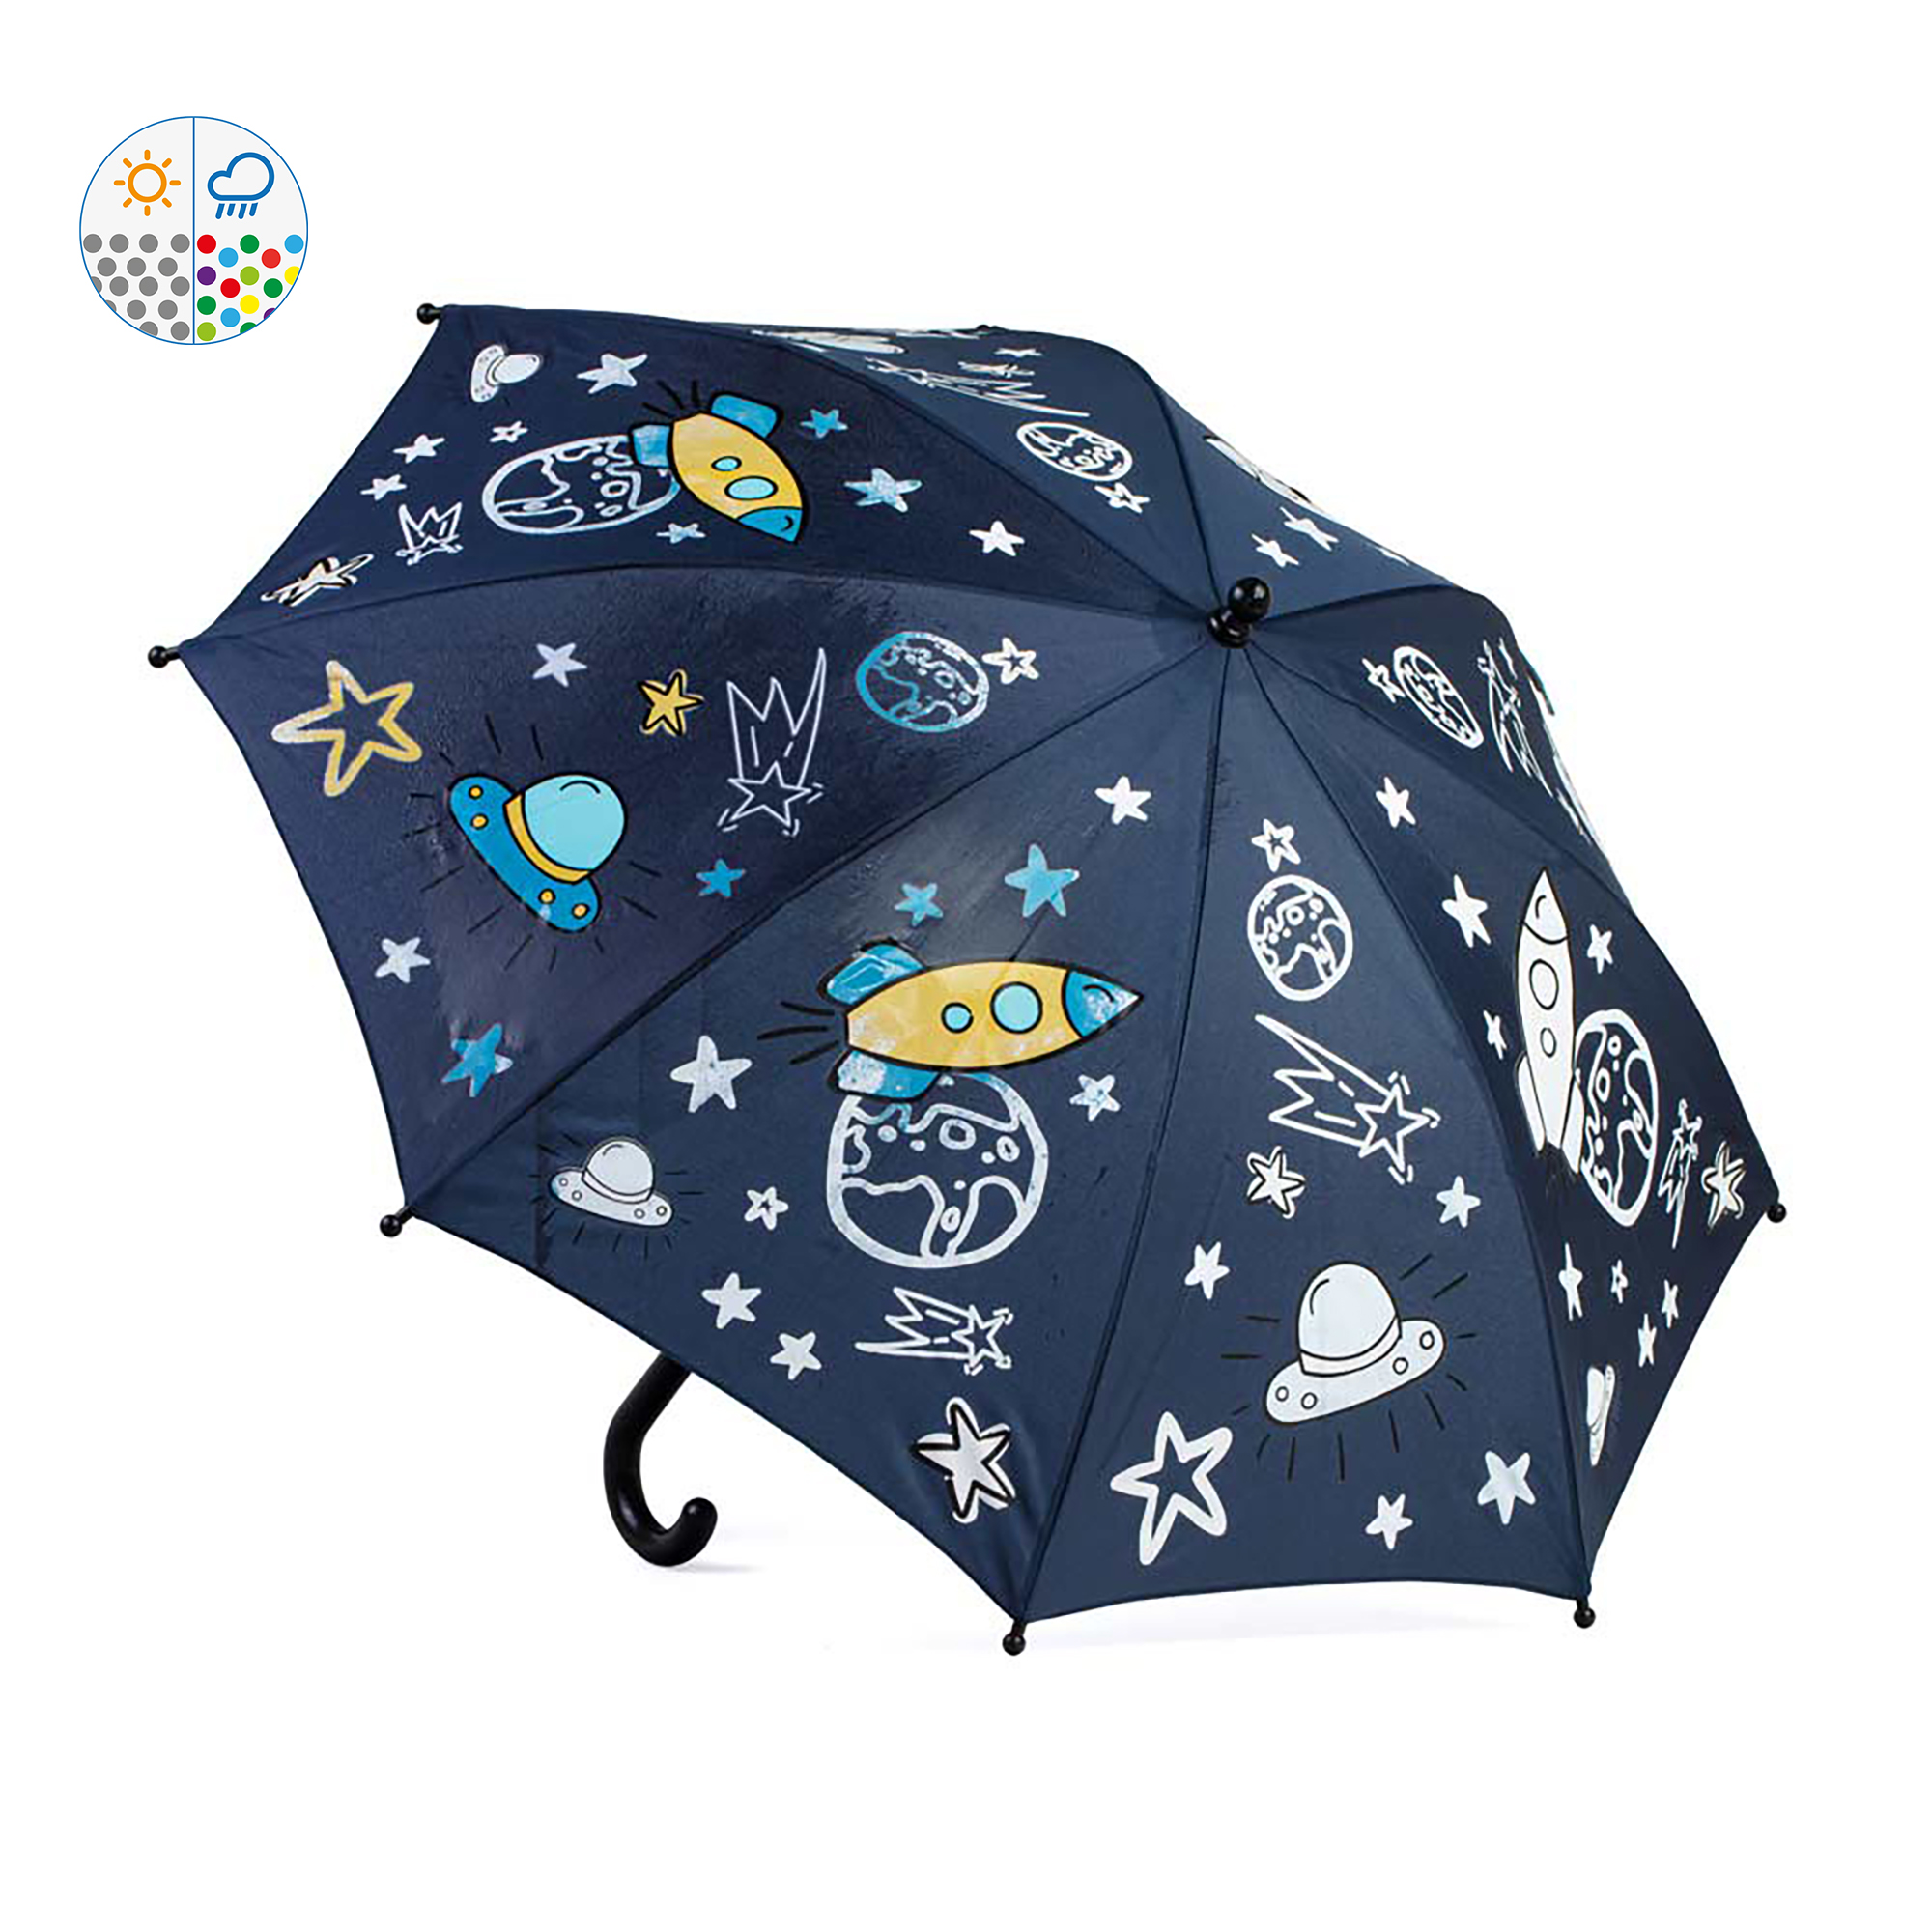 Зонт детский Котофей 03707072-00 синий зонт детский человек паук синий 8 спиц d 86 см